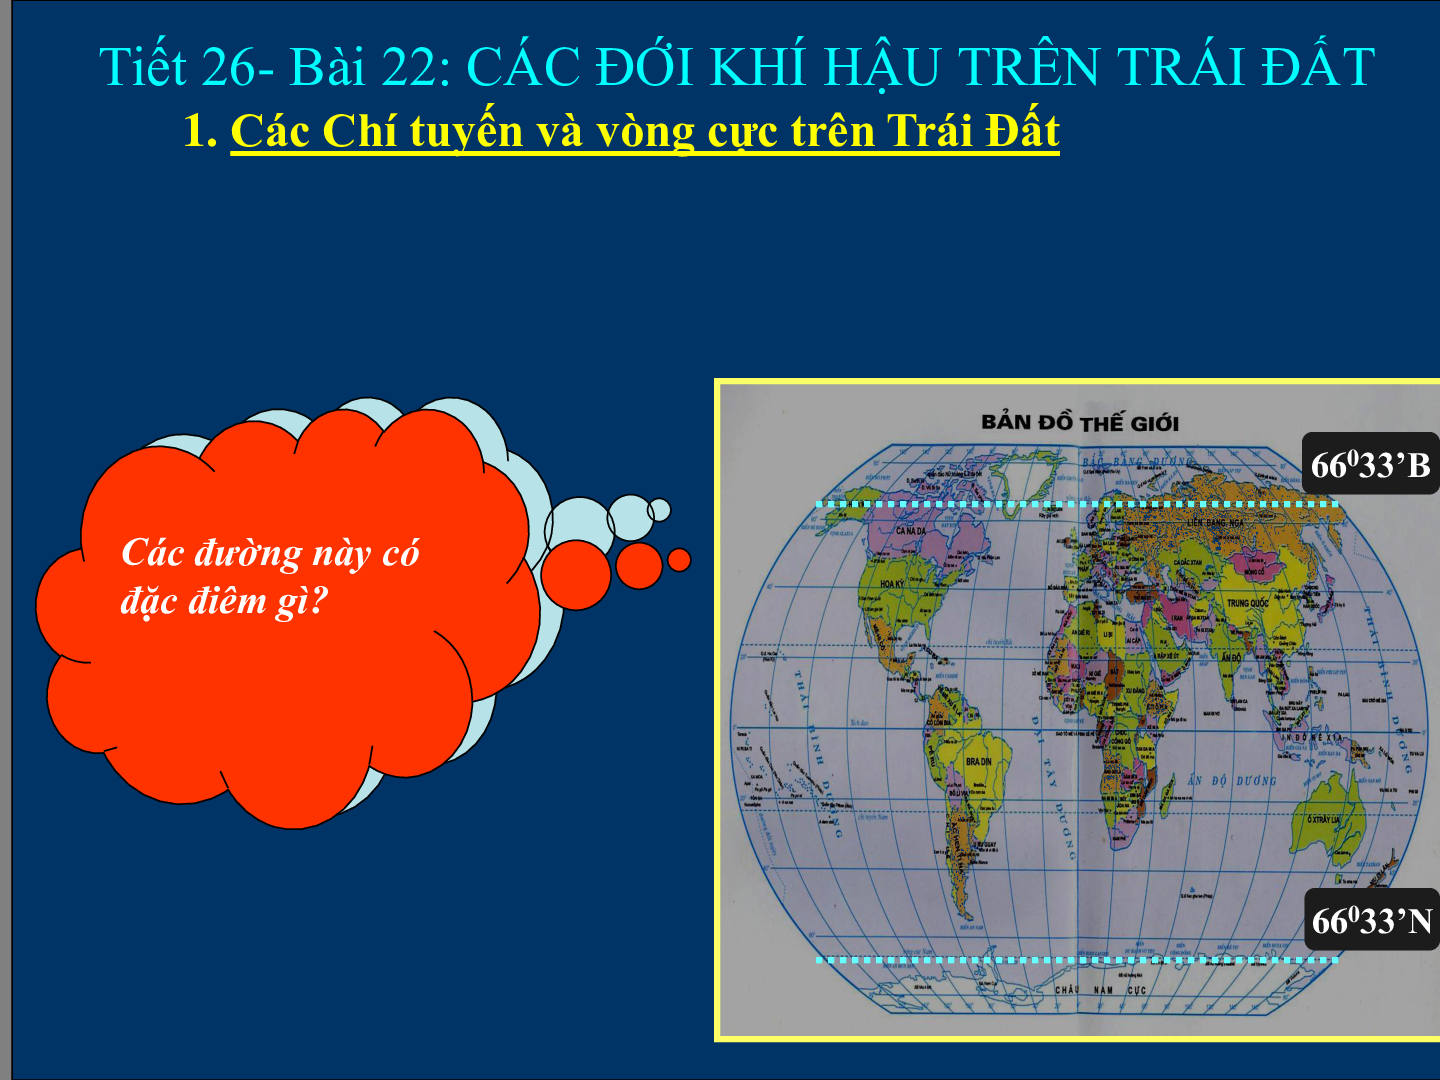 Bài giảng Địa lí 6 Tiết 26: Các đới khí hậu trên Trái Đất (trang 5)